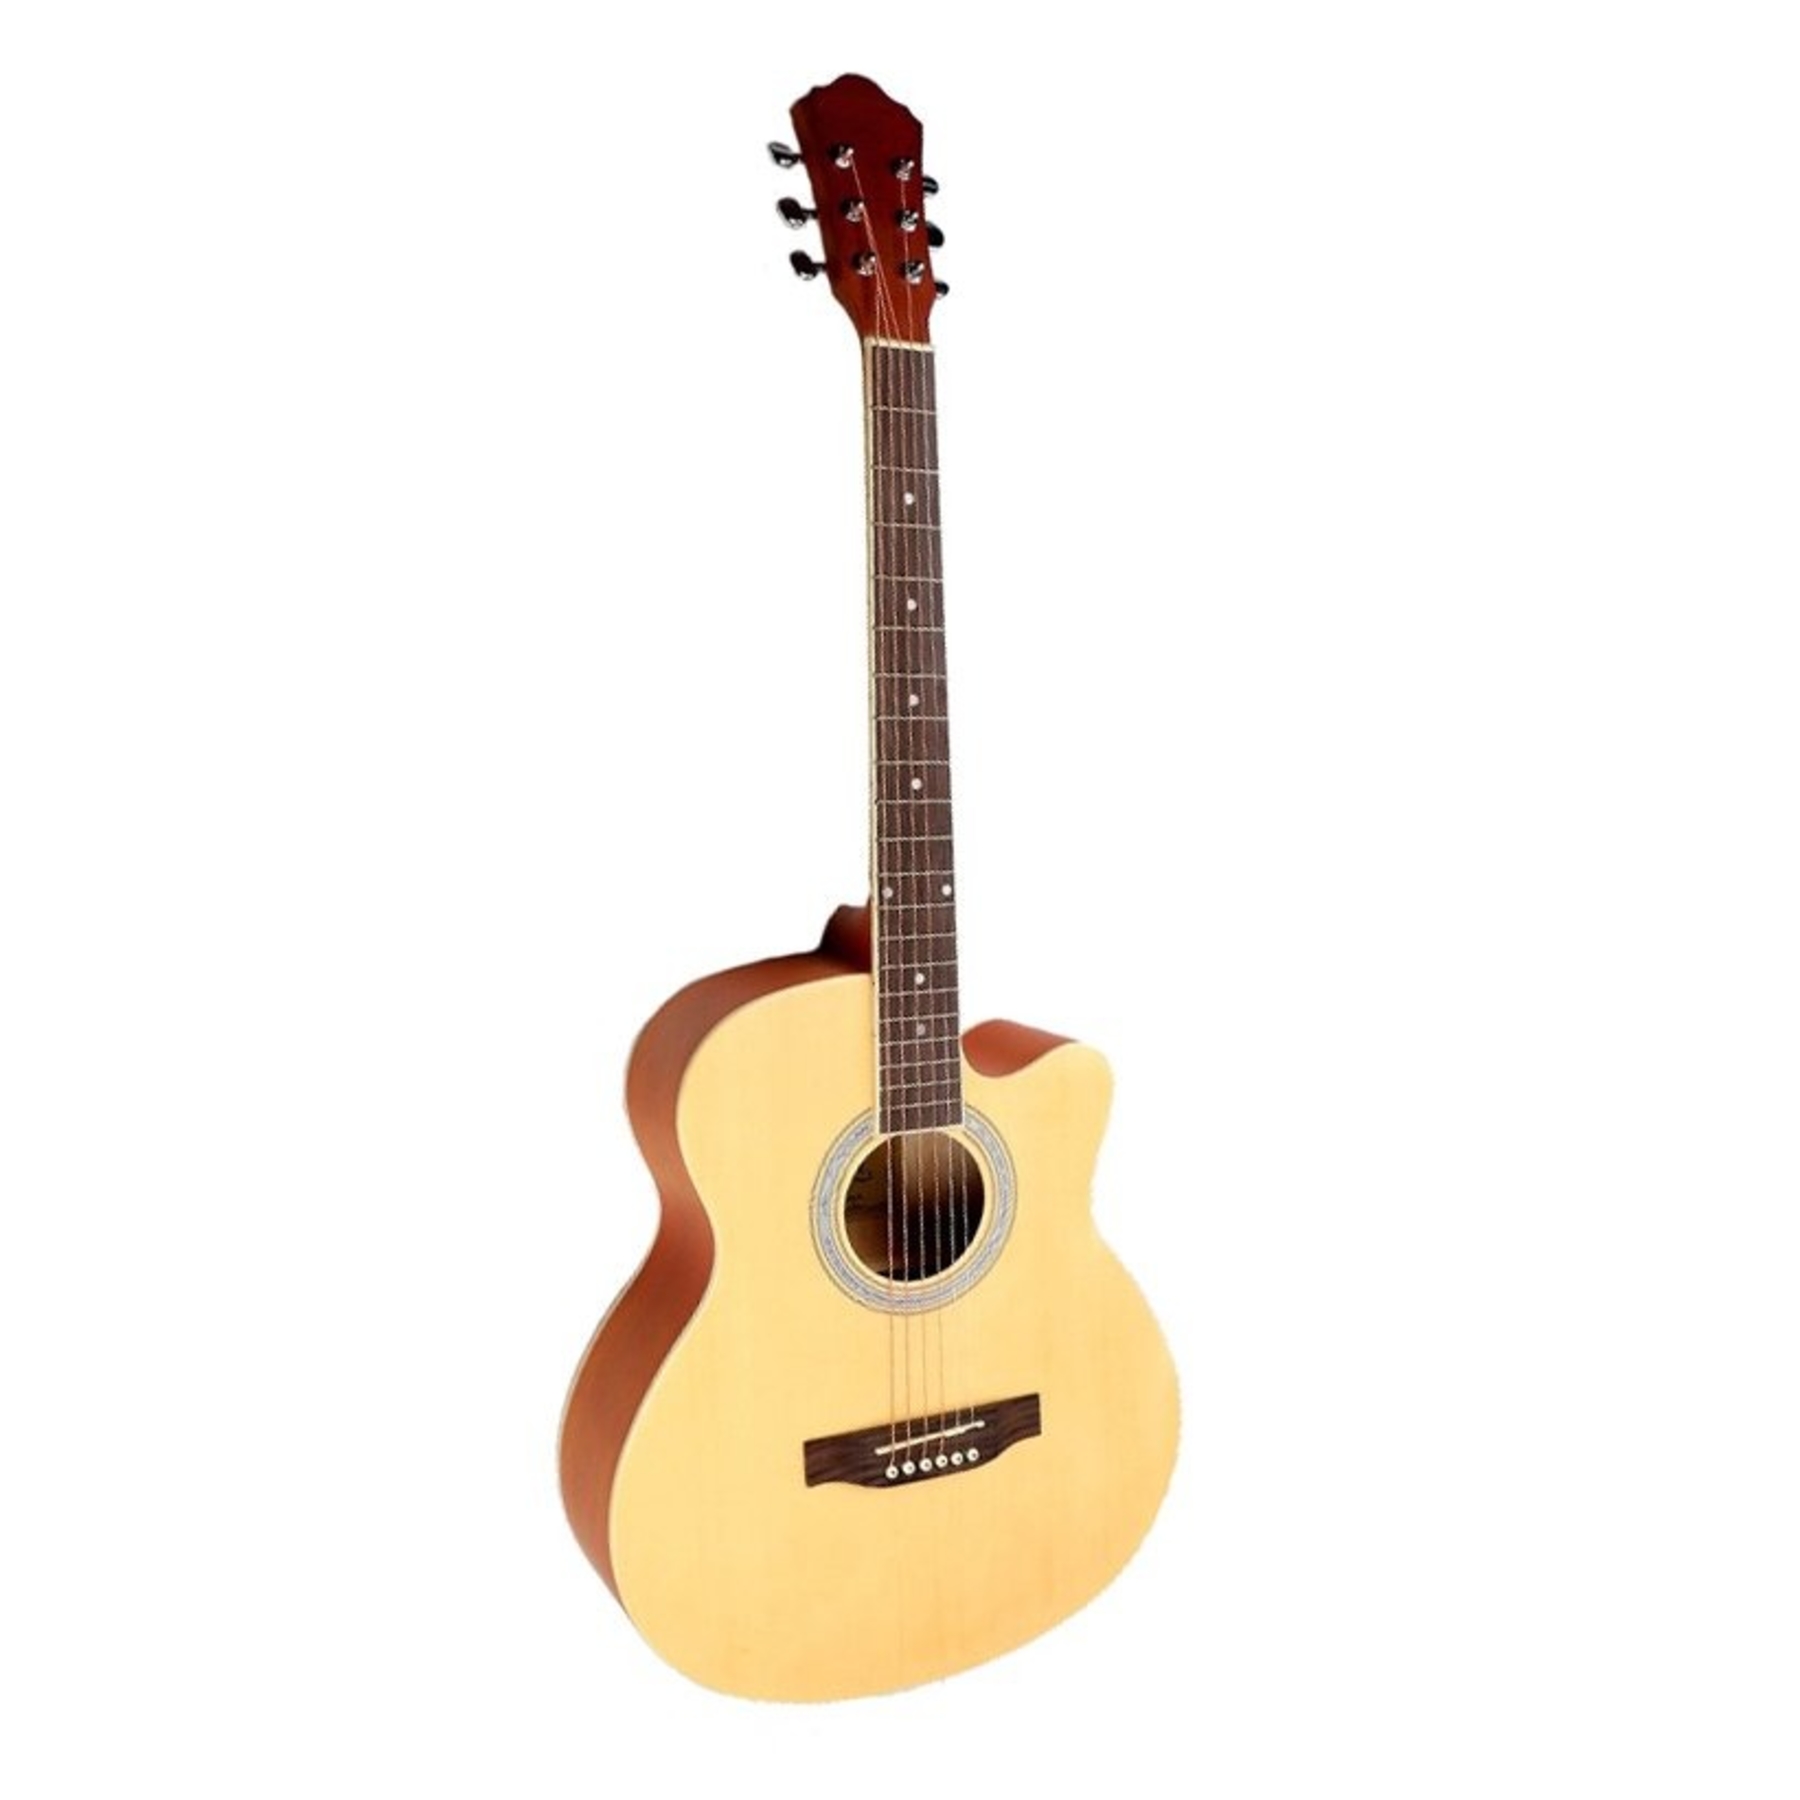 Акустические гитары Caravan K-4040 N акустическая гитара с вырезом 95 см